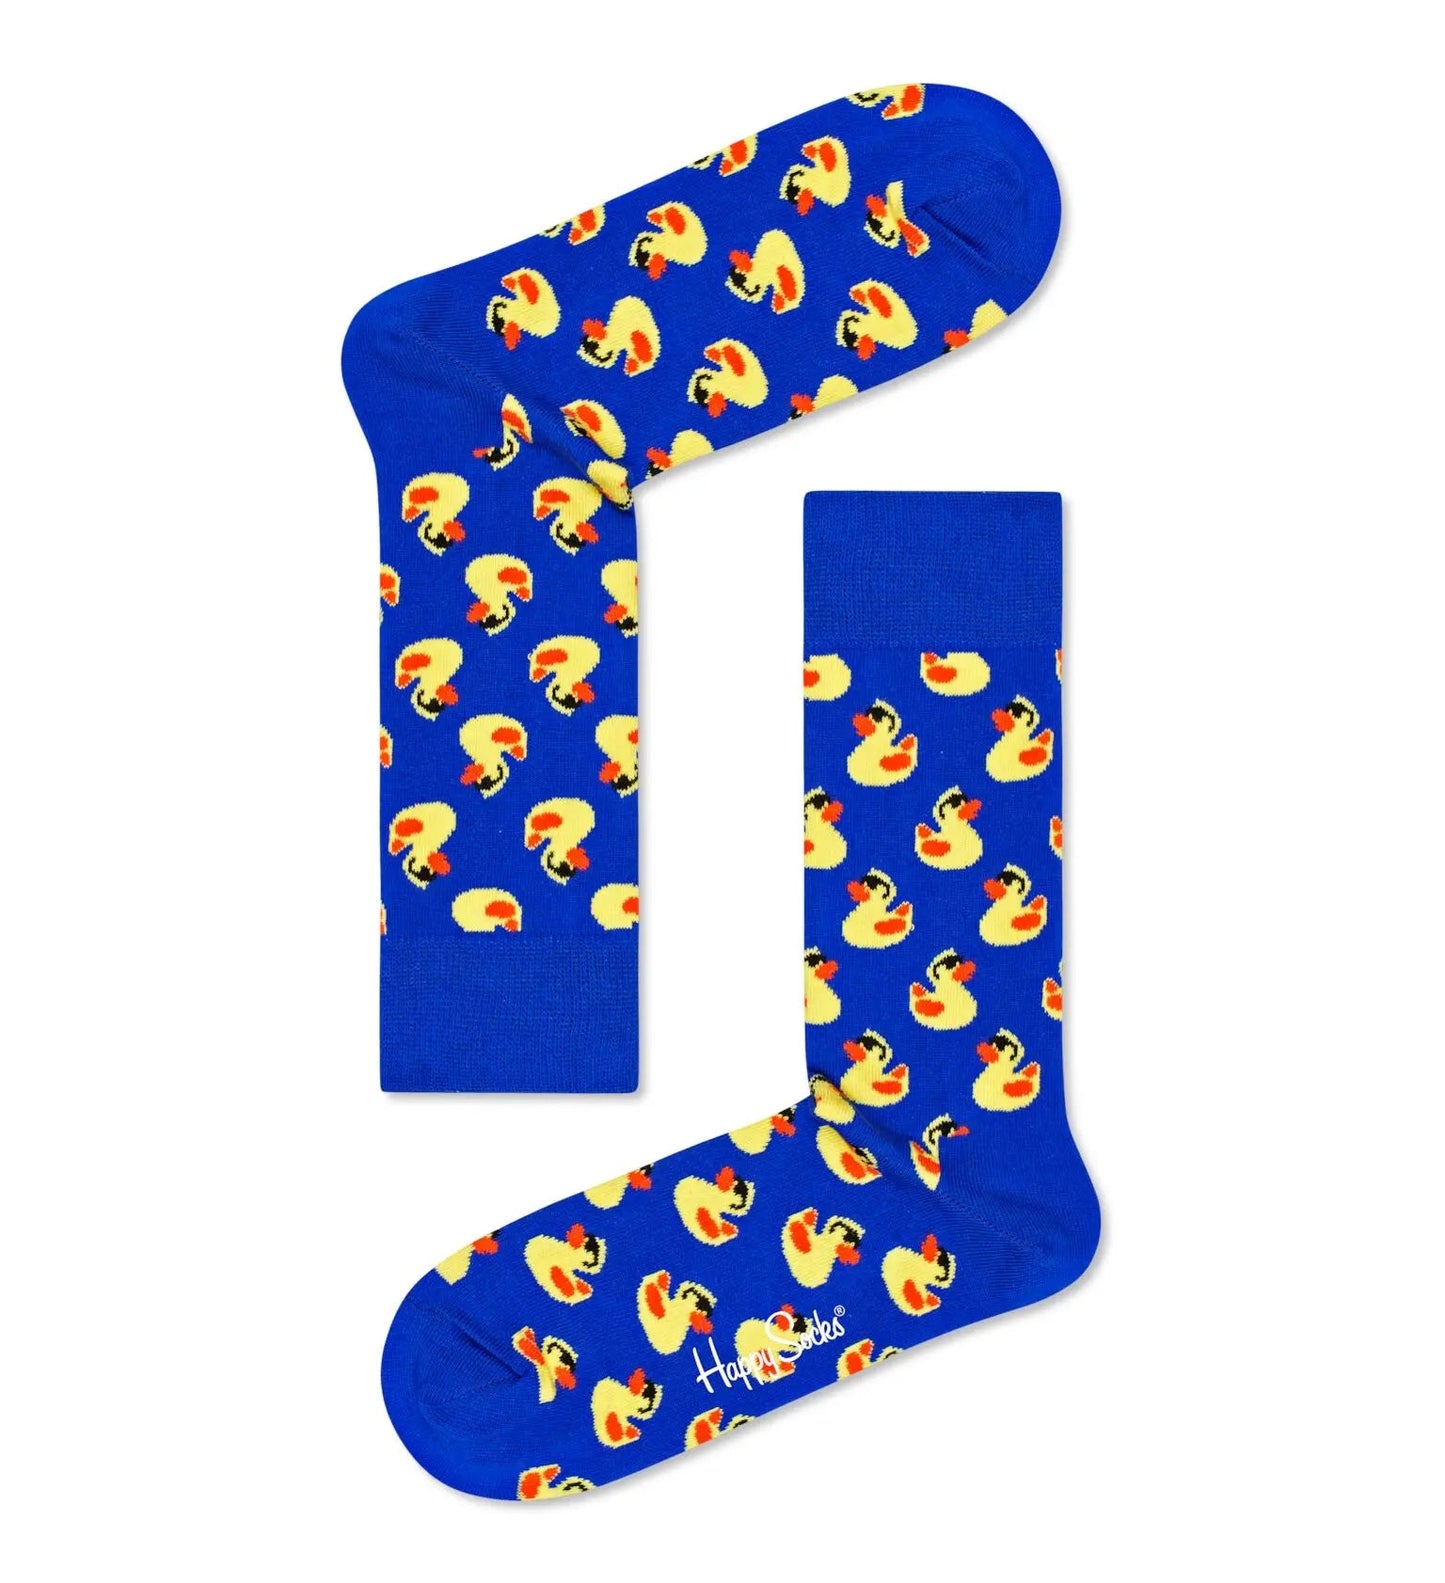 Happy Socks Rubber Duck Sock - No Generation